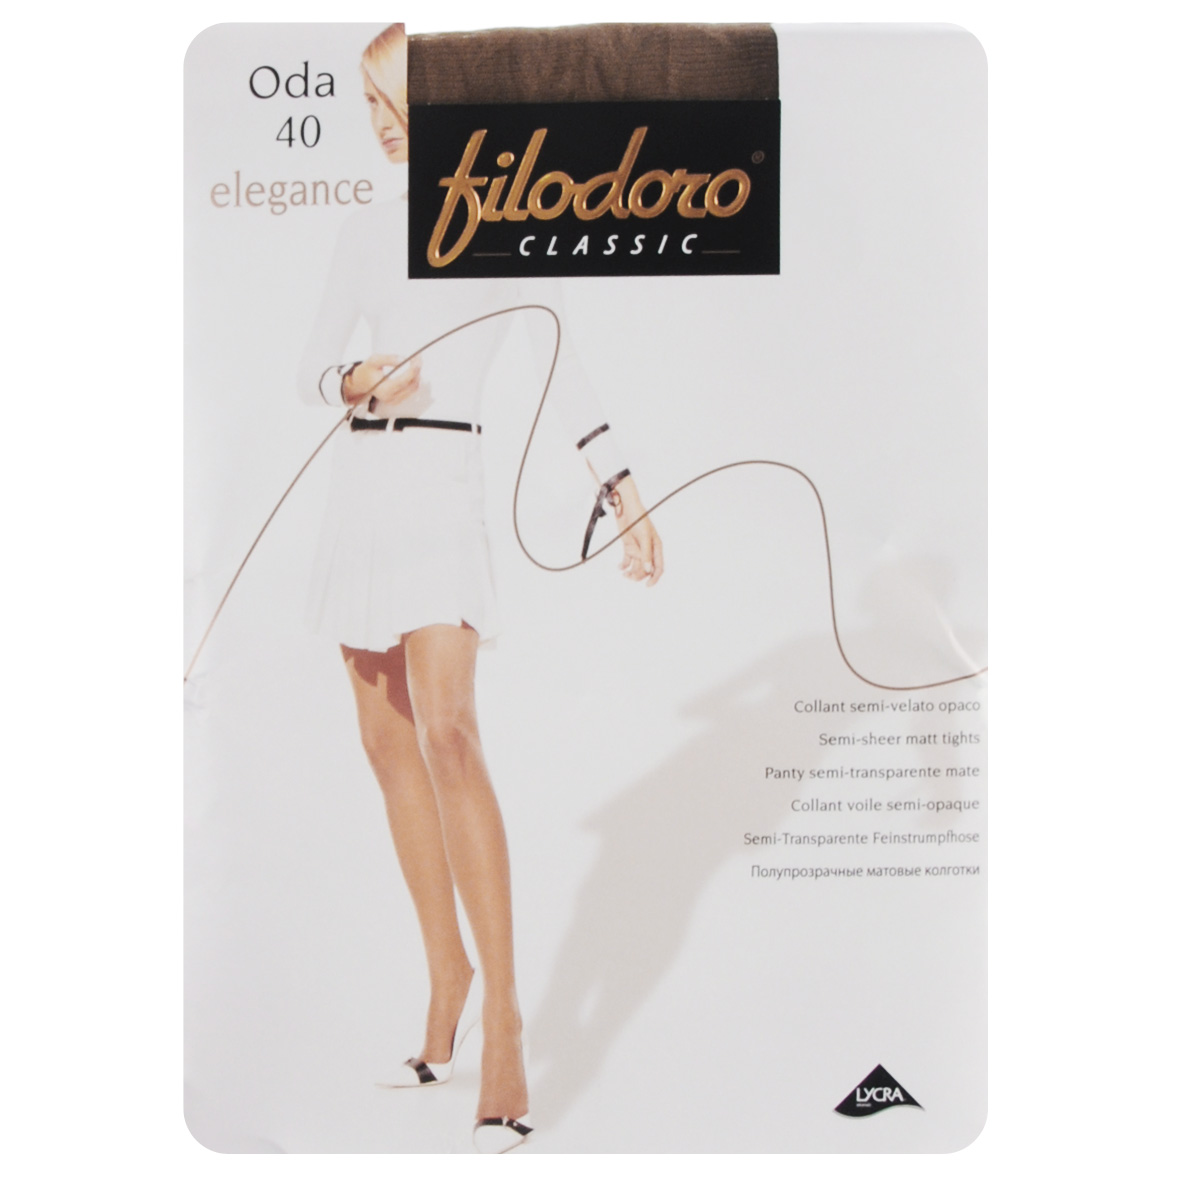 Колготки женские Filodoro Classic Oda 40 Elegance, цвет: Glace (коричневый). SSP-016656. Размер 4 (L)